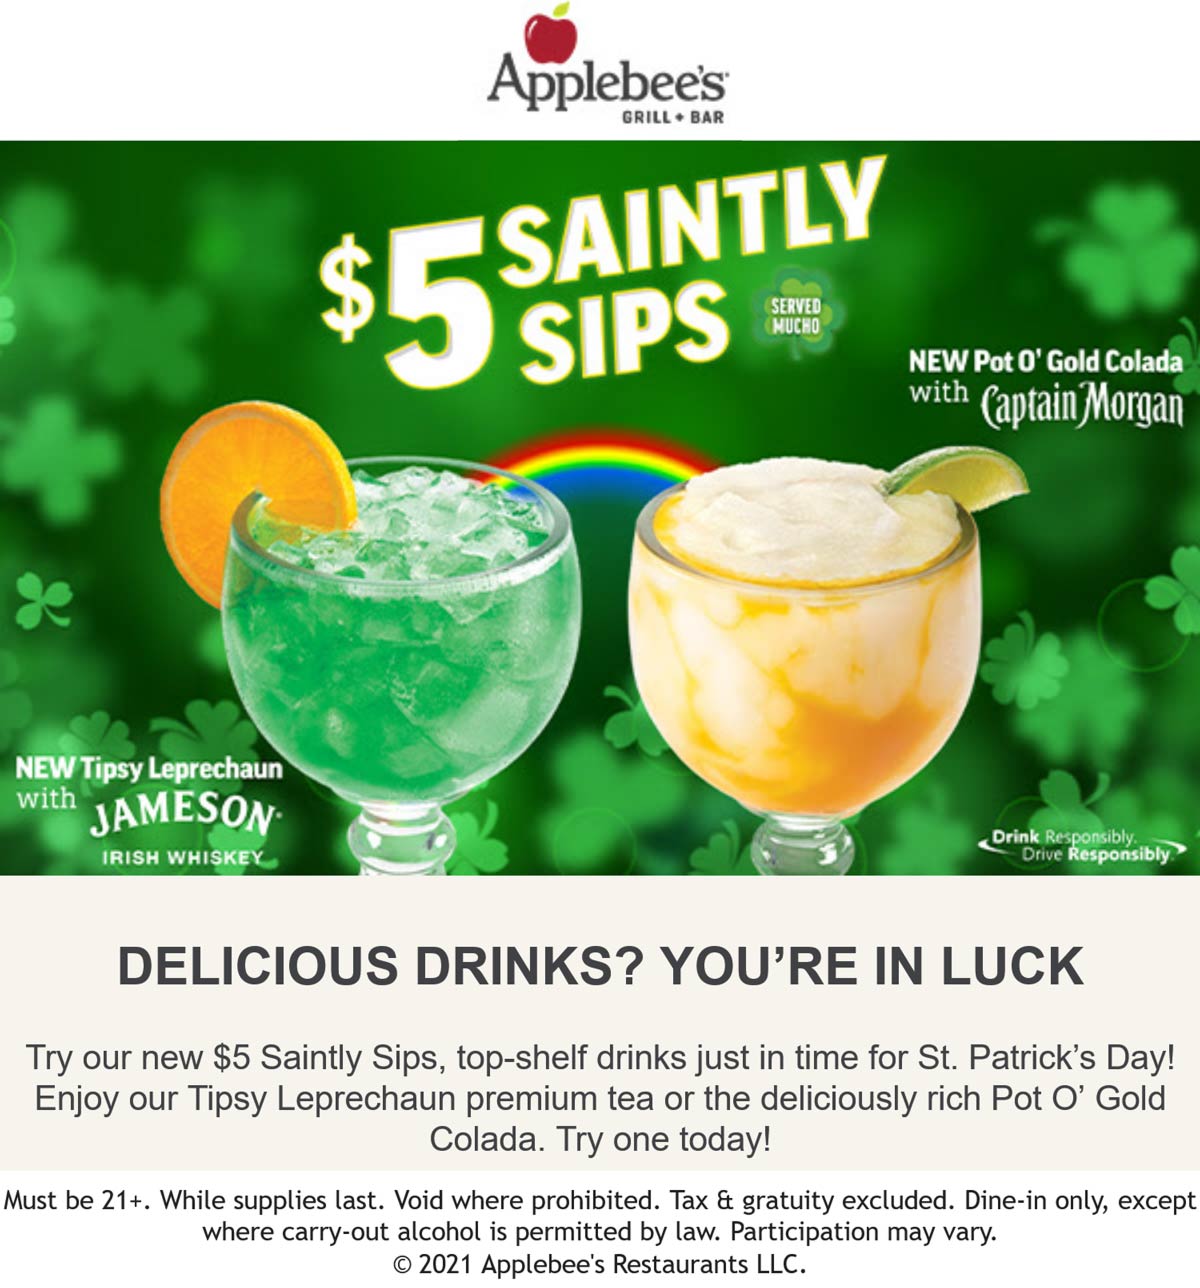 Applebees restaurants Coupon  $5 top-shelf St. Patricks drinks at Applebees restaurants #applebees 